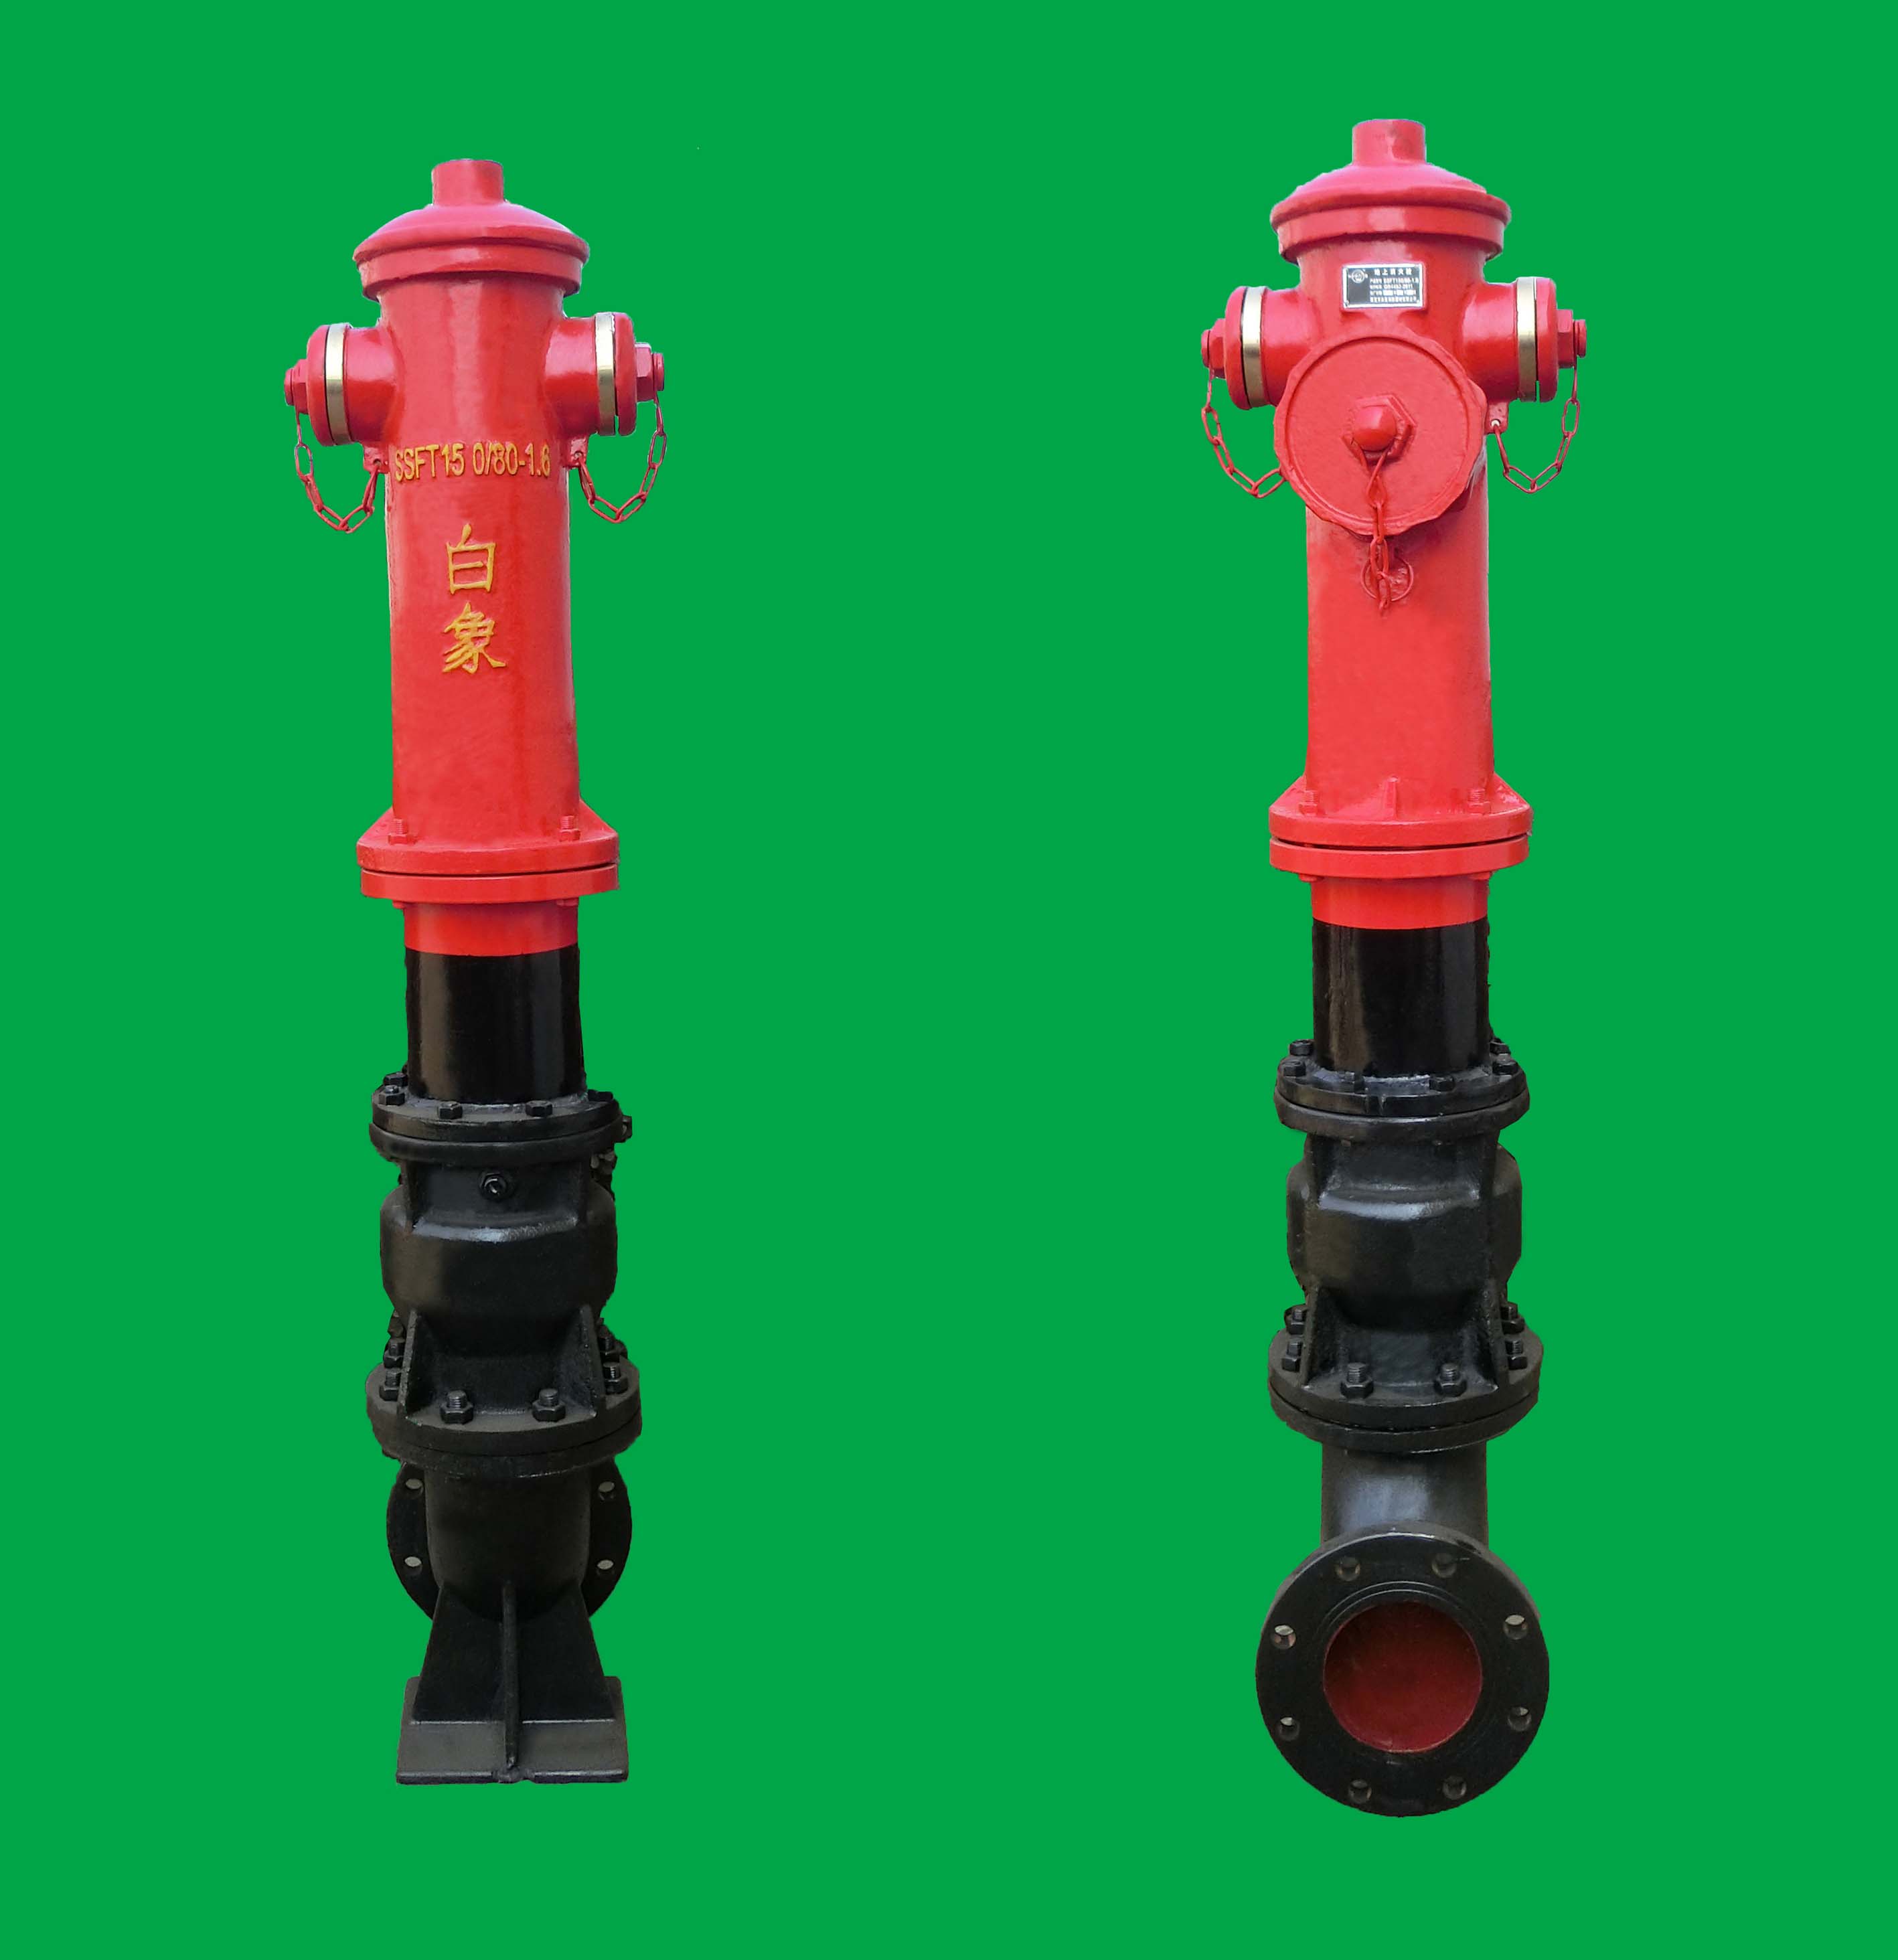 萊蕪防撞調壓型室外消火栓SSFT150/80型